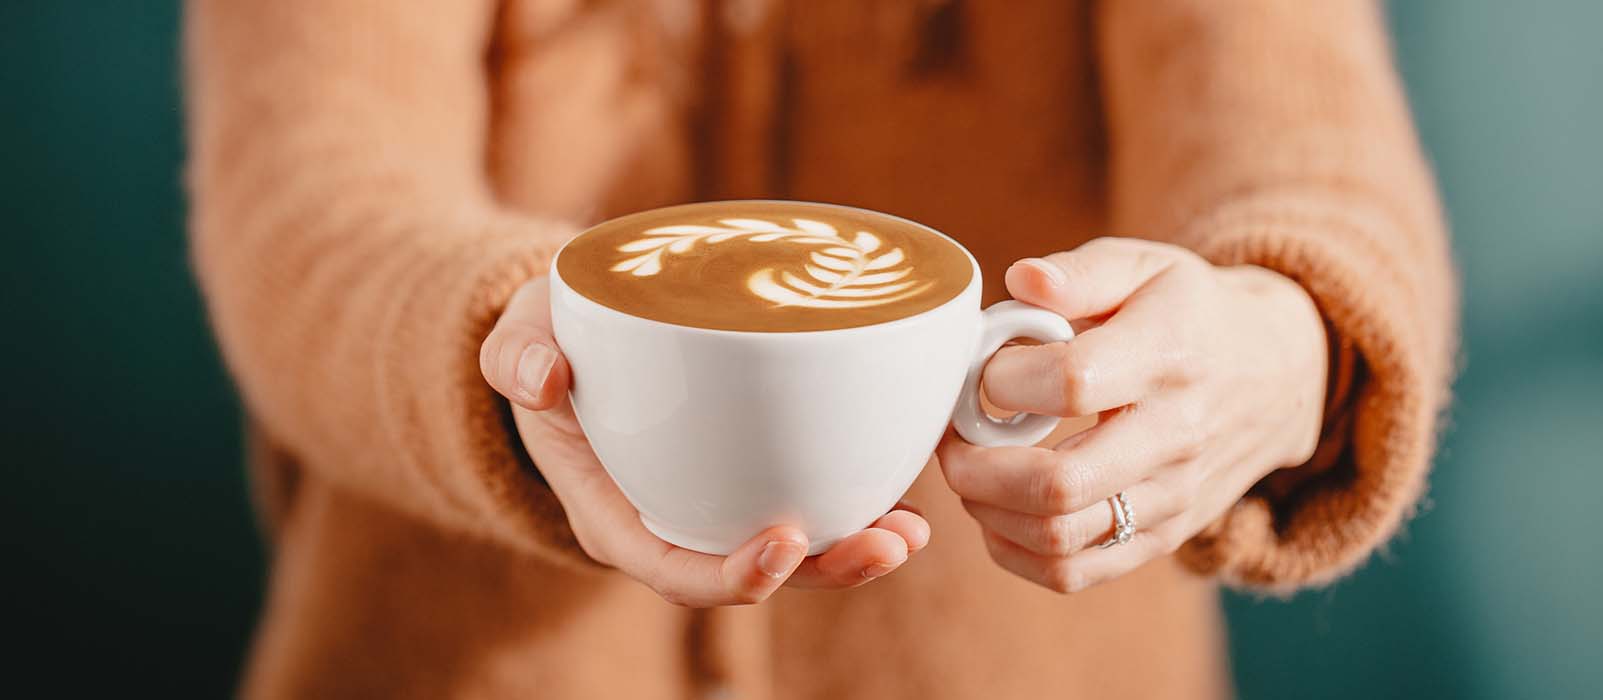 Les meilleures machines à café à grain cappuccino 2023 - MaxiCoffee